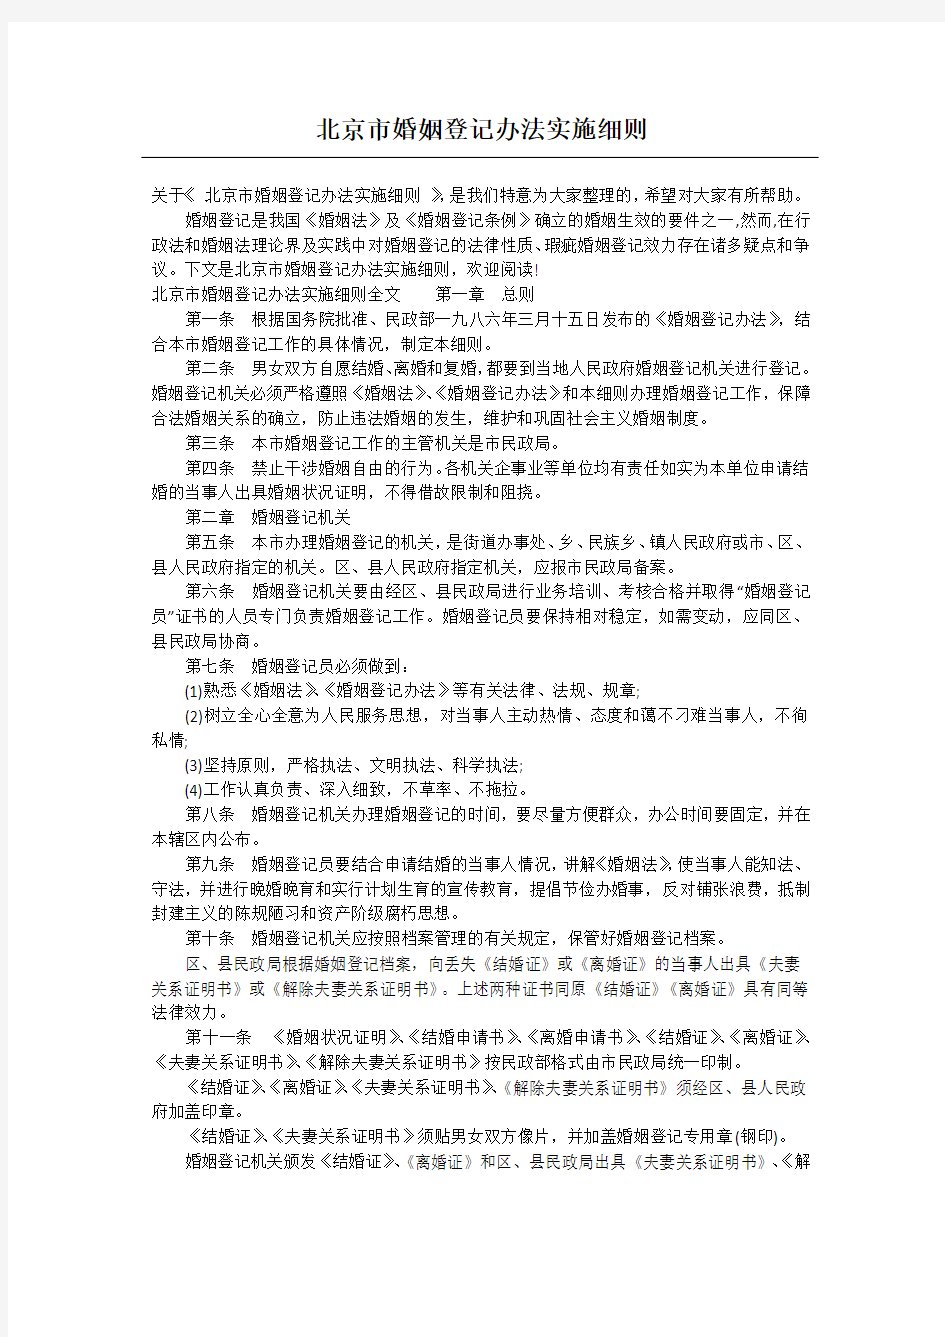 北京市婚姻登记办法实施细则